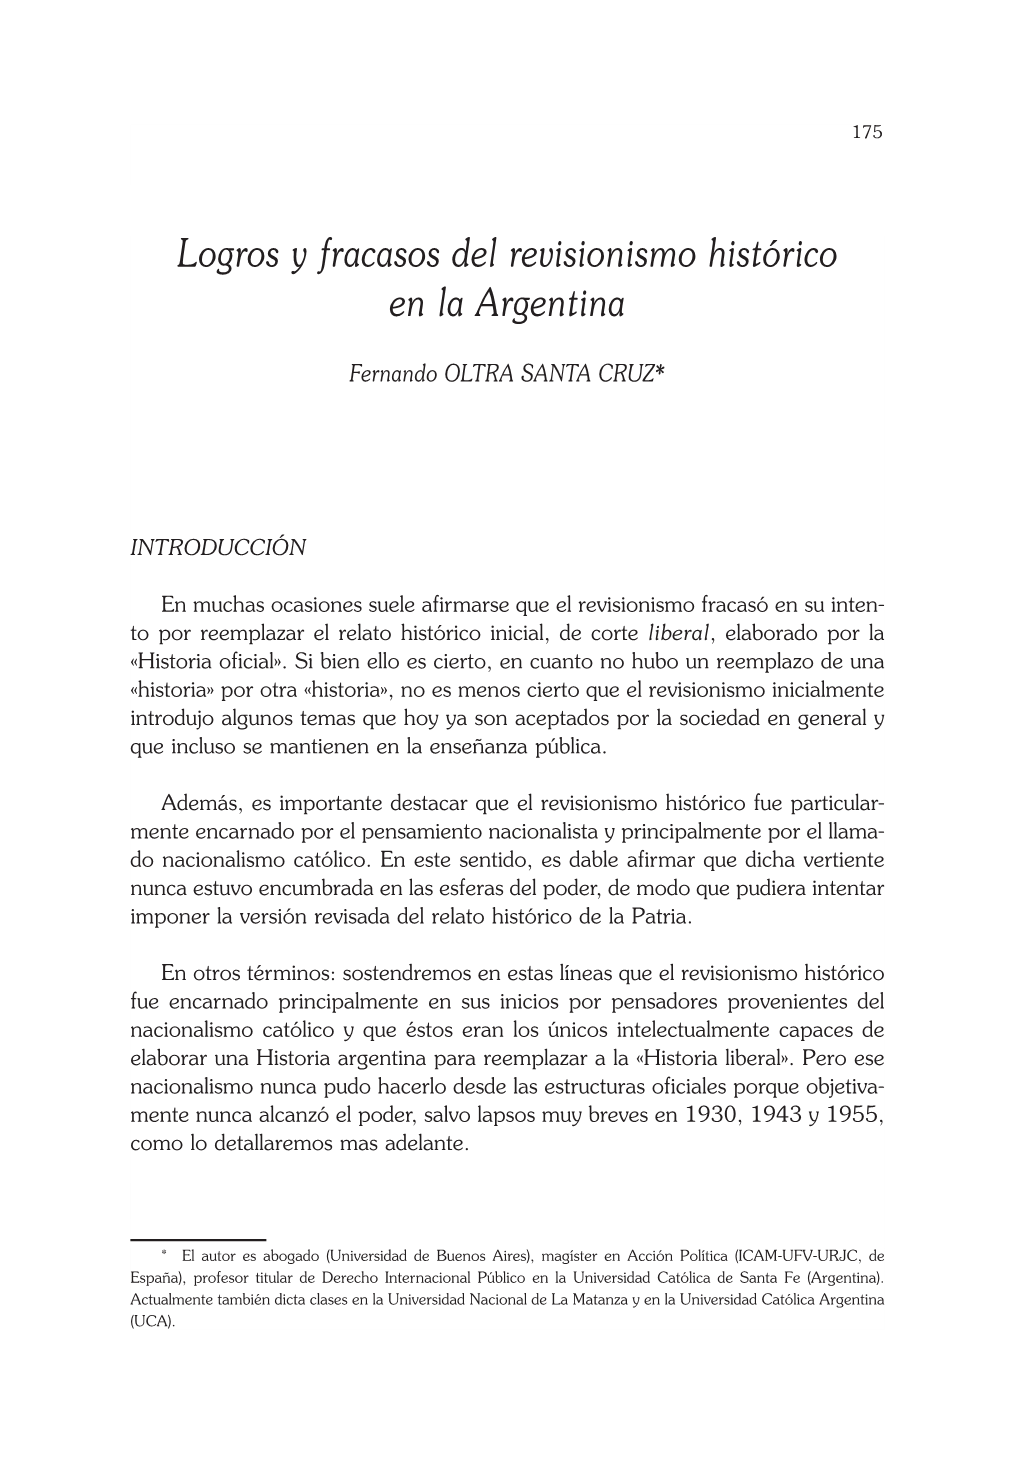 Logros Y Fracasos Del Revisionismo Histórico En La Argentina